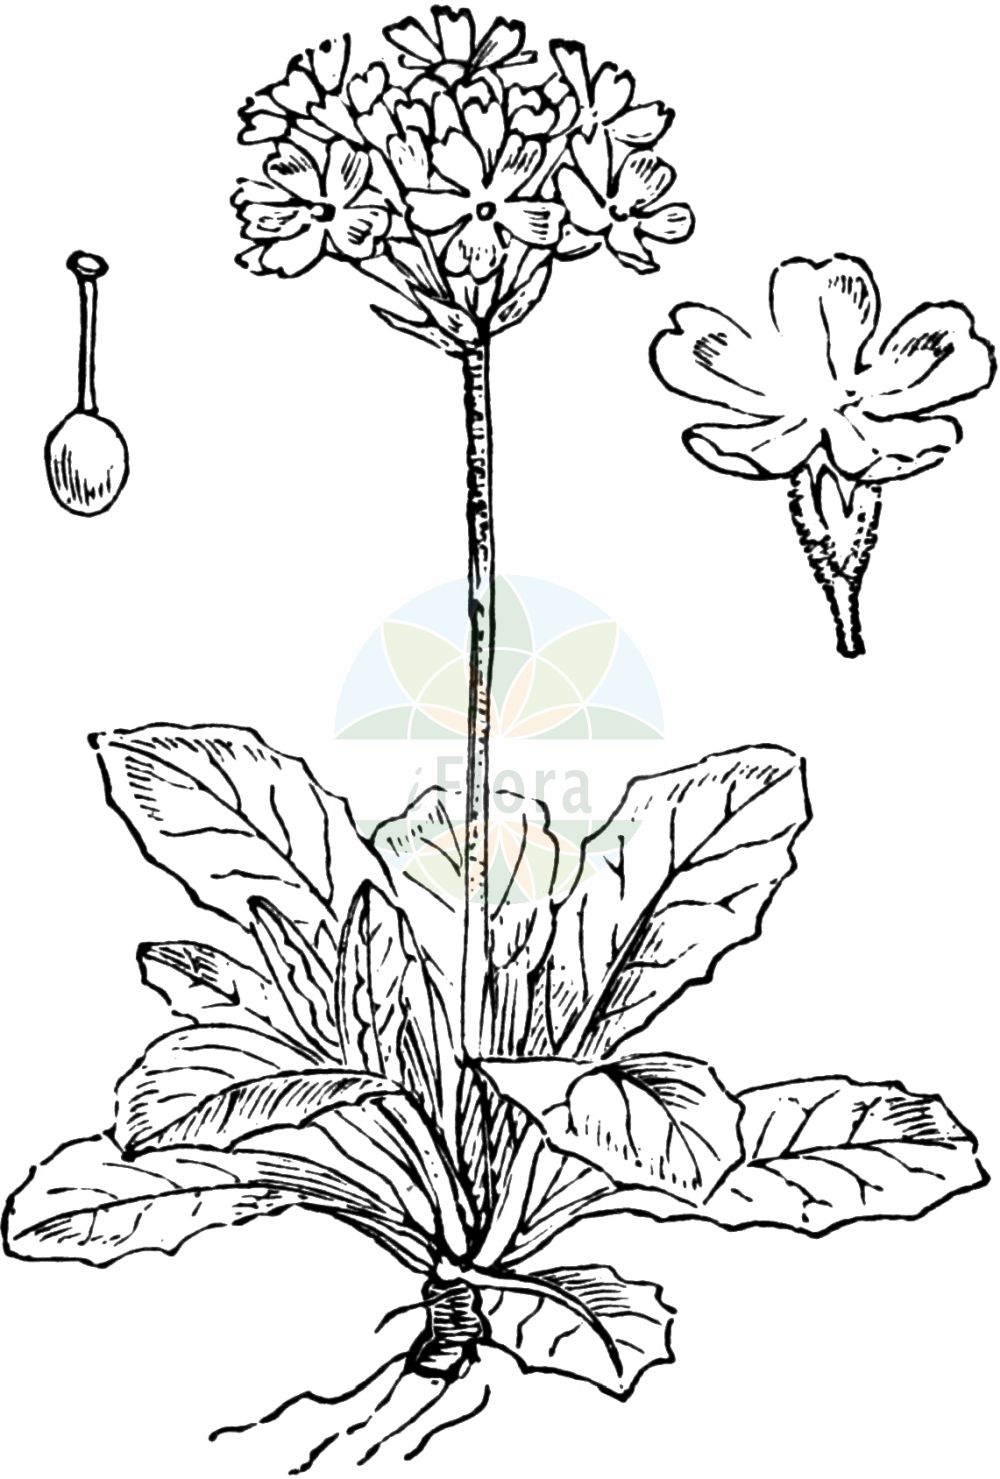 Historische Abbildung von Primula farinosa (Mehlige Schlüsselblume - Bird's-eye Primrose). Das Bild zeigt Blatt, Bluete, Frucht und Same. ---- Historical Drawing of Primula farinosa (Mehlige Schlüsselblume - Bird's-eye Primrose). The image is showing leaf, flower, fruit and seed.(Primula farinosa,Mehlige Schlüsselblume,Bird's-eye Primrose,Primula farinosa,Mehlige Schluesselblume,Mehl-Schluesselblume,Bird's-eye Primrose,Birdeye Primrose,Primula,Schlüsselblume,Primrose,Primulaceae,Schlüsselblumengewächse,Primrose family,Blatt,Bluete,Frucht,Same,leaf,flower,fruit,seed,Fitch et al. (1880))